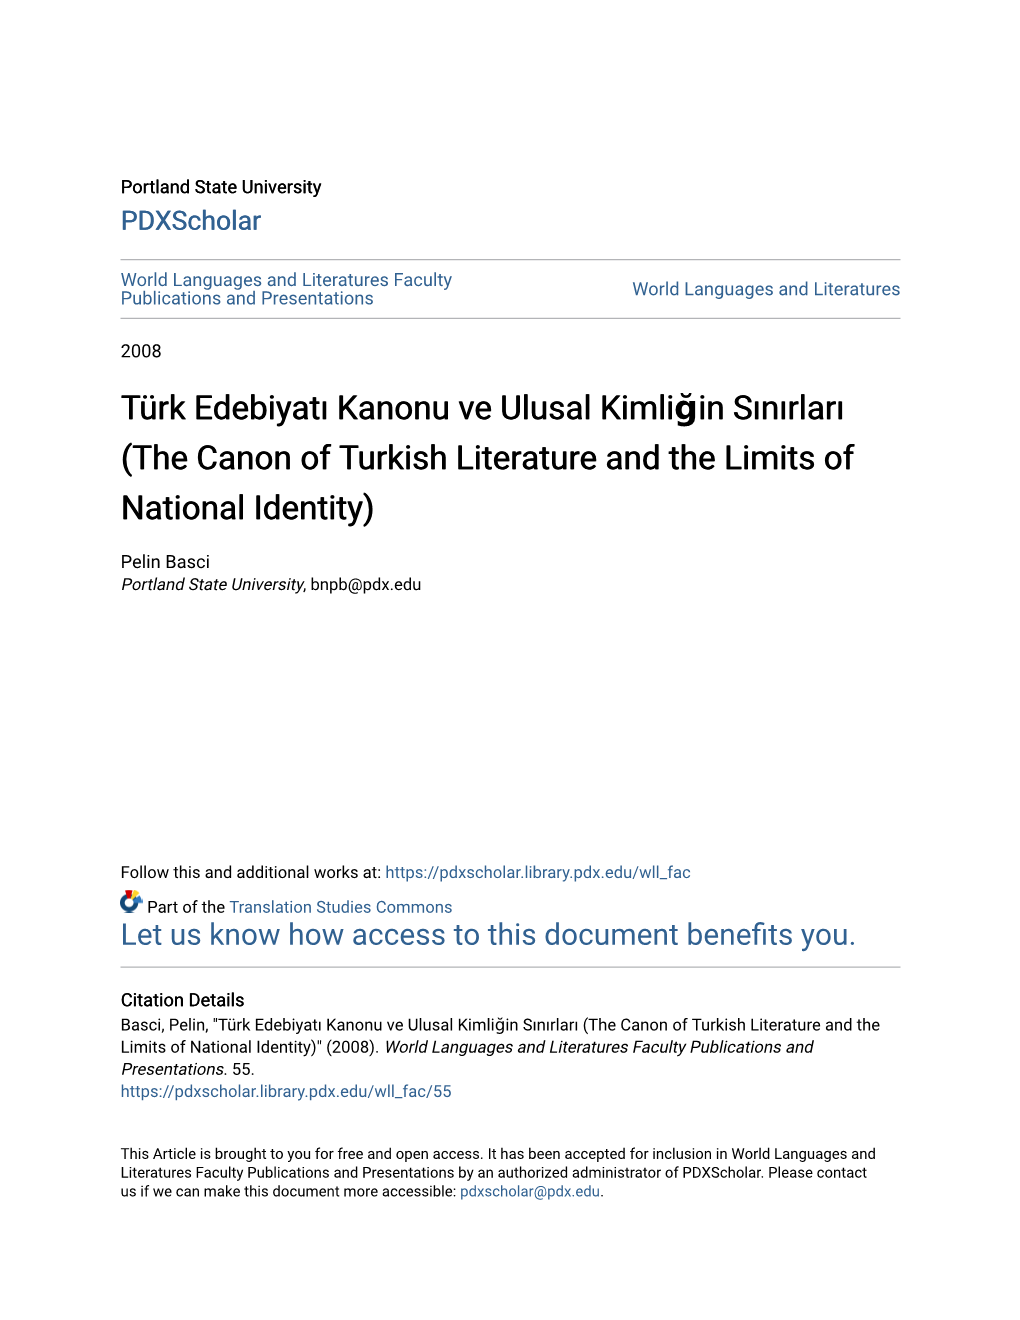 Türk Edebiyatı Kanonu Ve Ulusal Kimliğin Sınırları Türk Edebiyatı